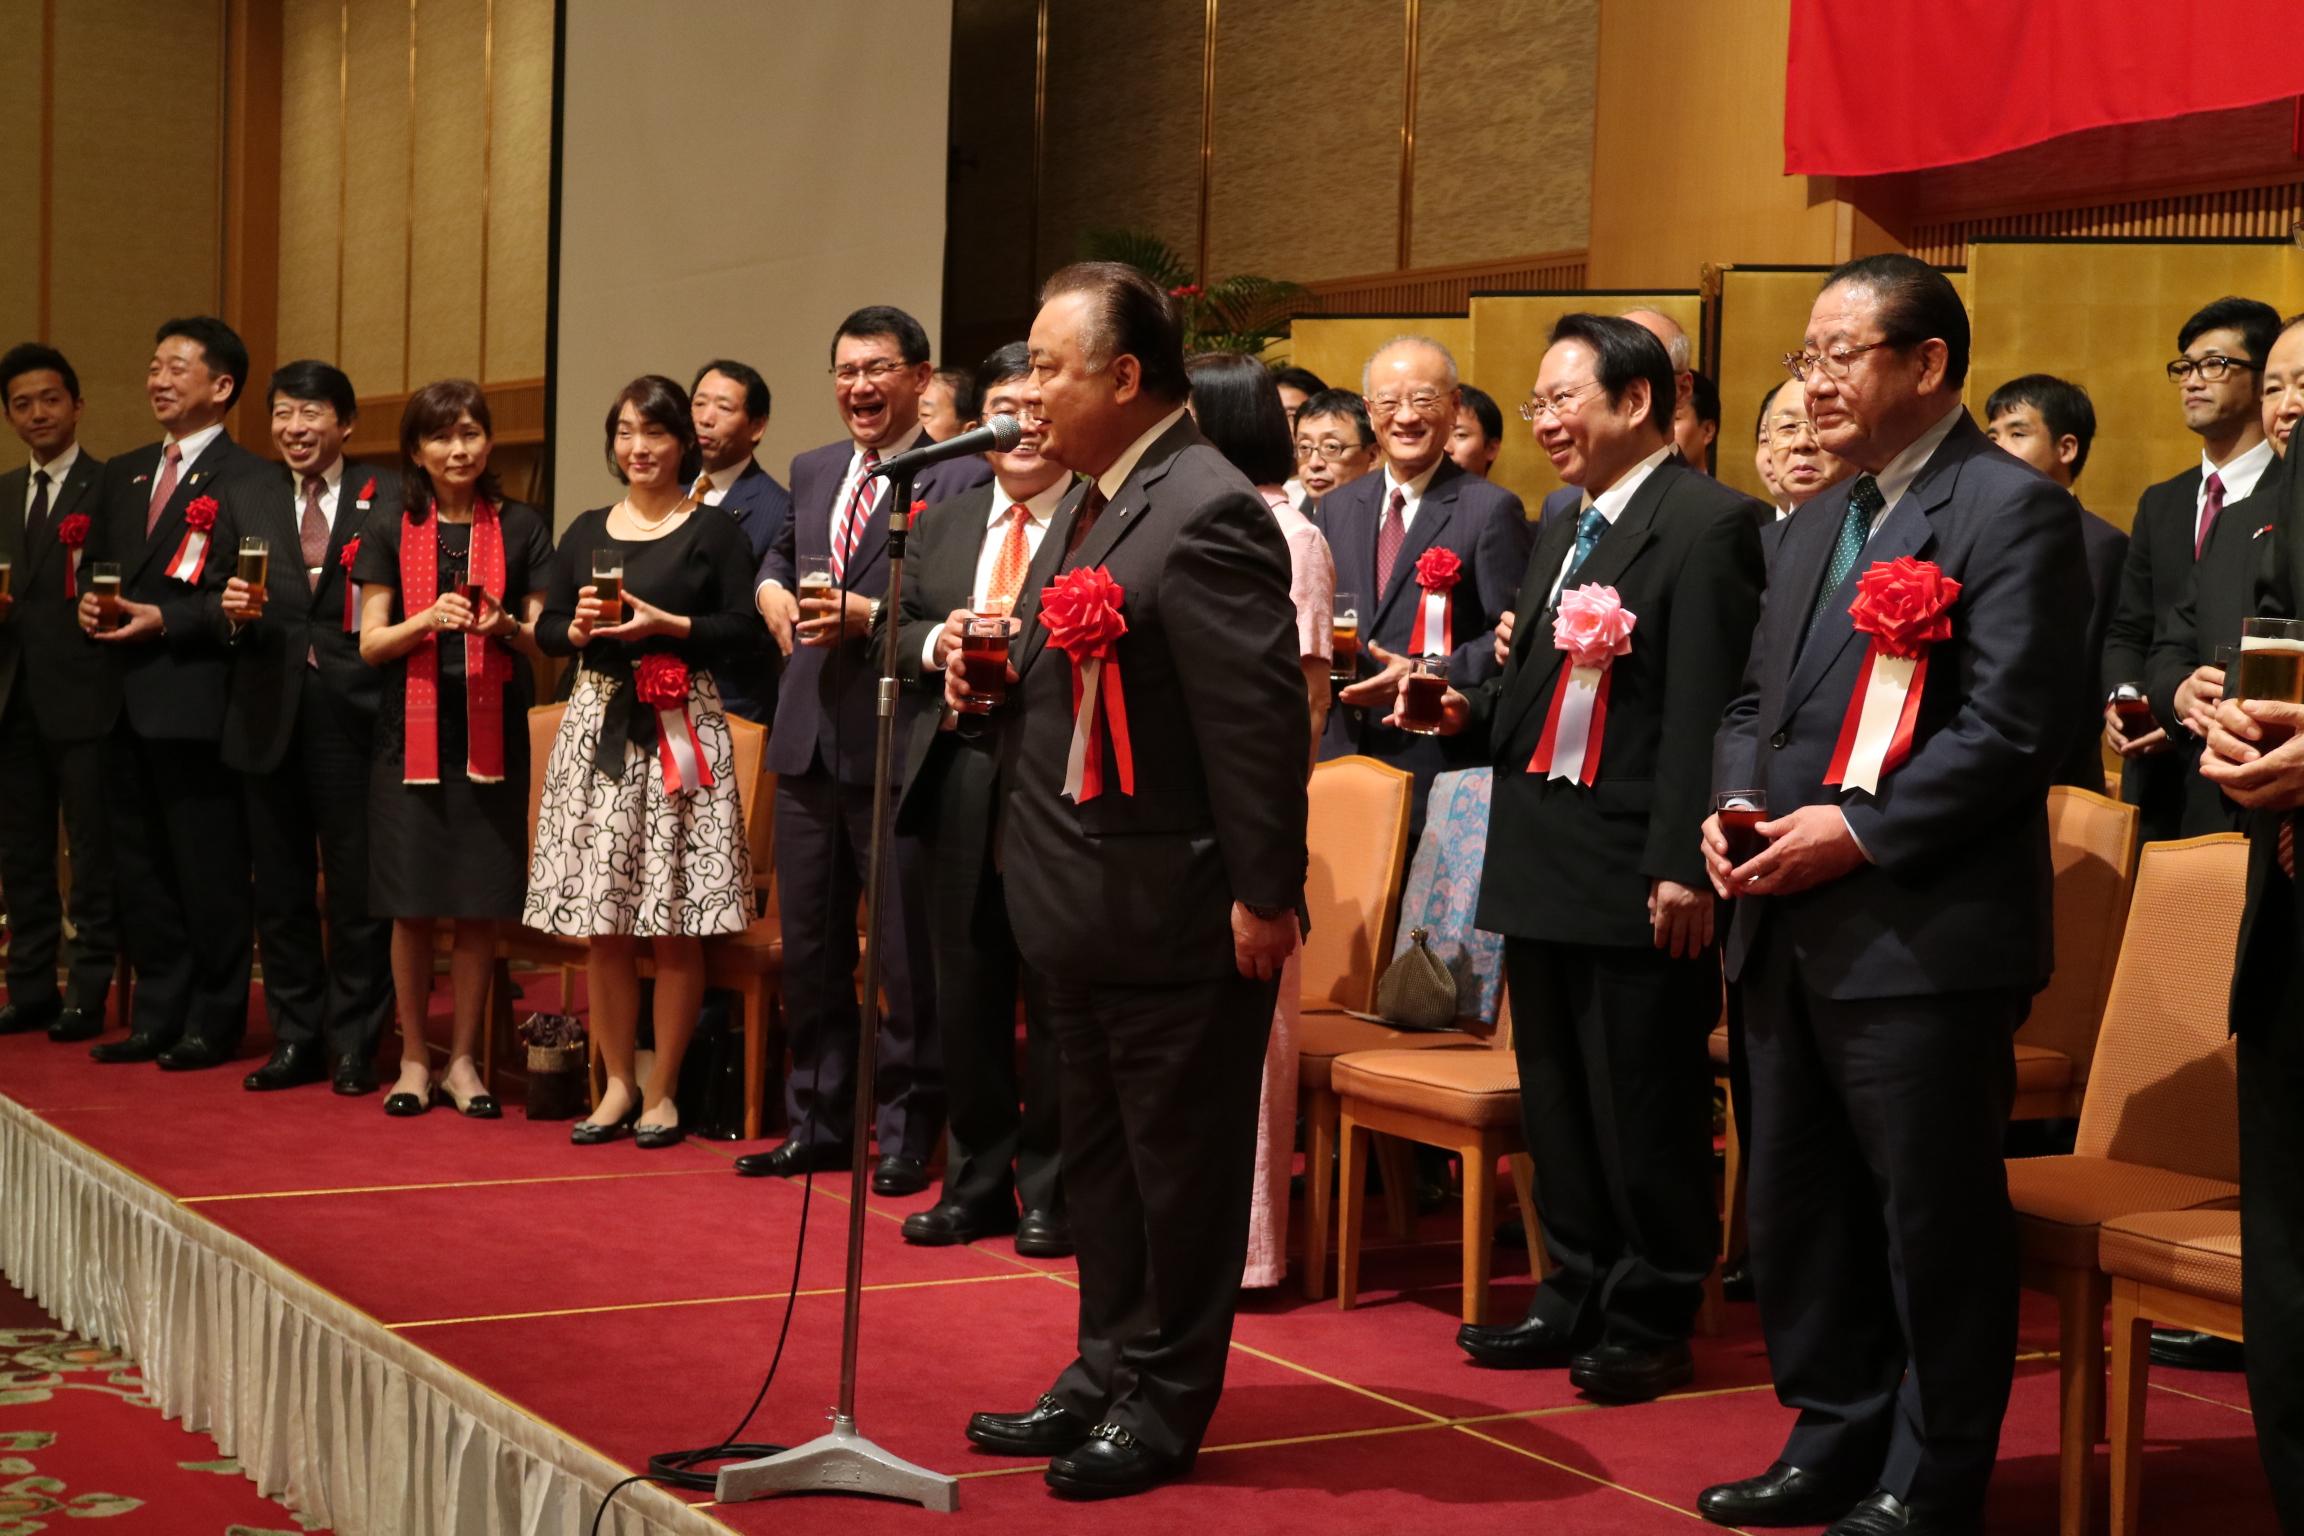 福岡県議会台湾友好議員連盟会長加地邦雄による乾杯の音頭